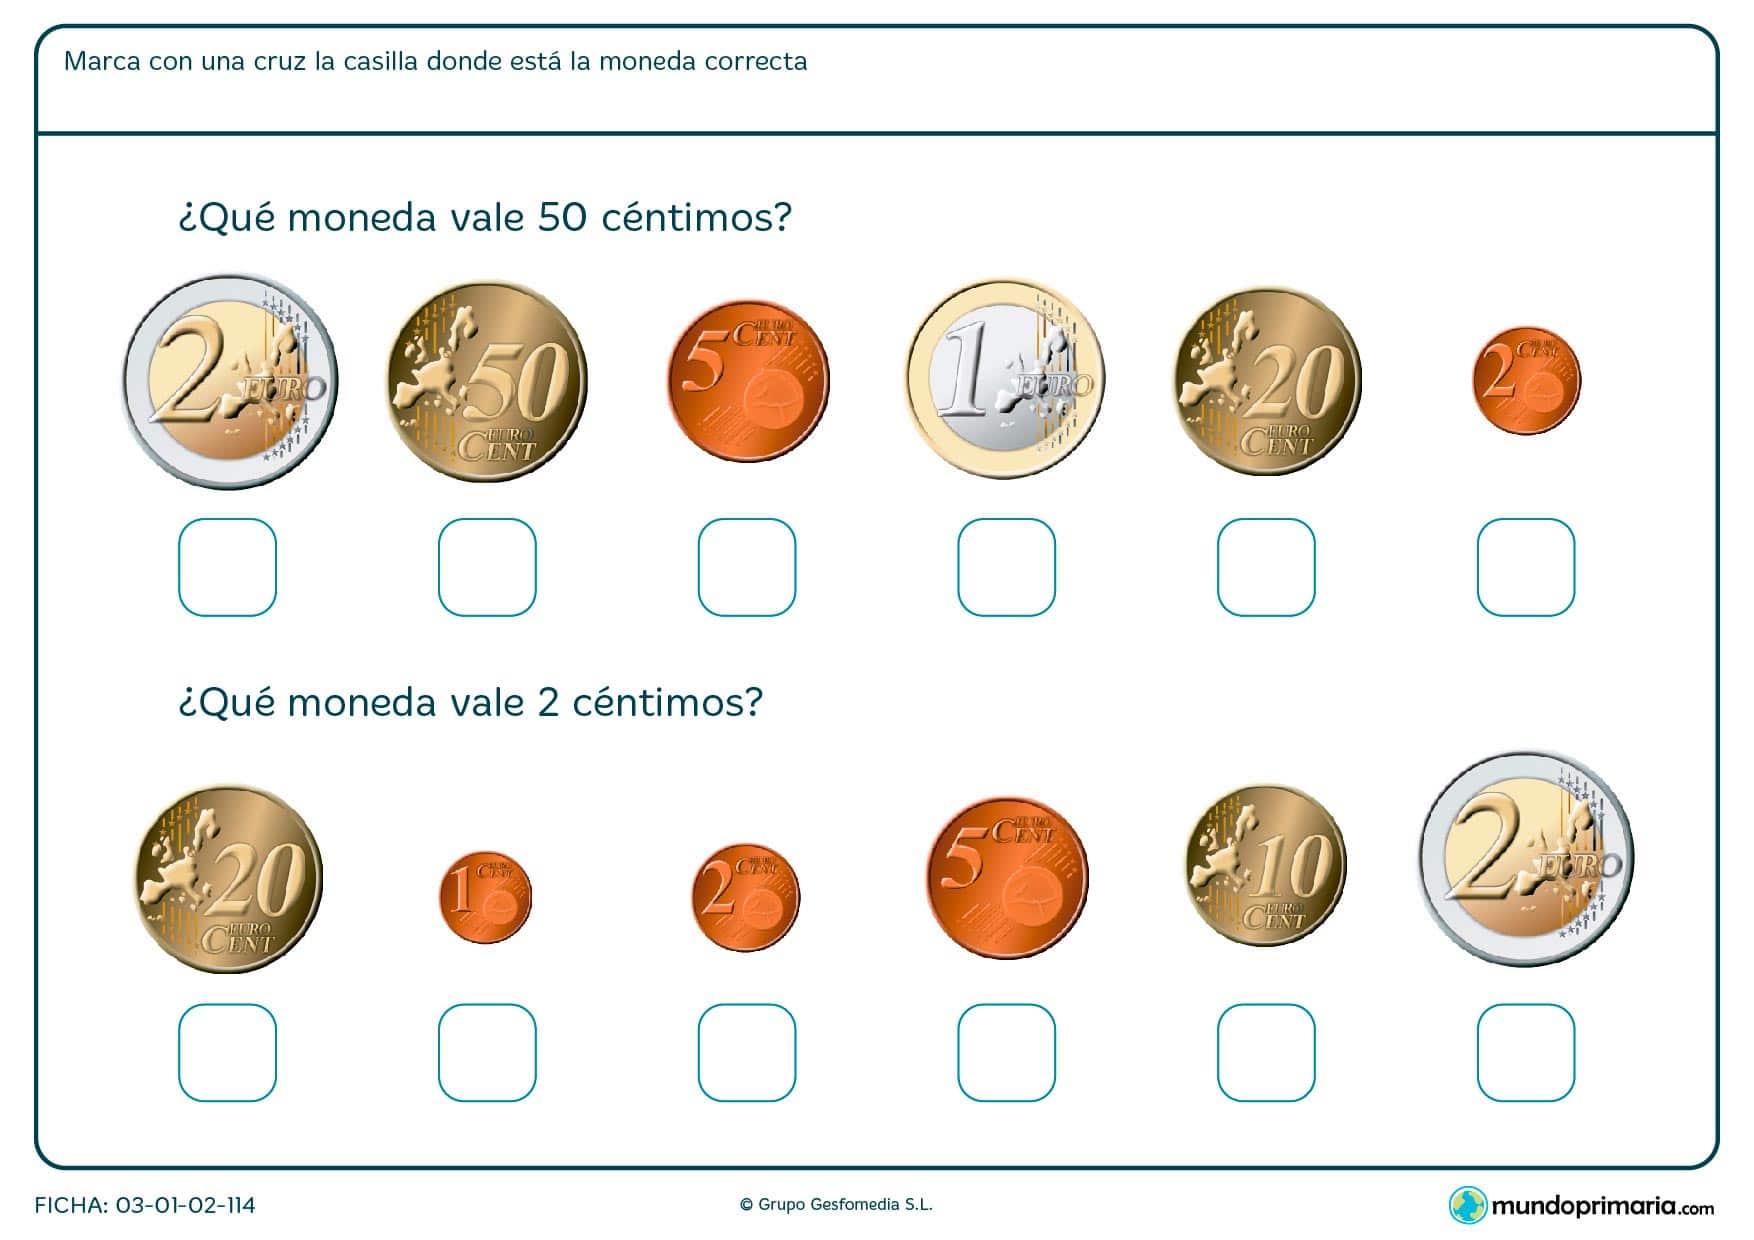 Ficha de monedas de 50 céntimos y 2 céntimos, búscalas y márcalas con una x.